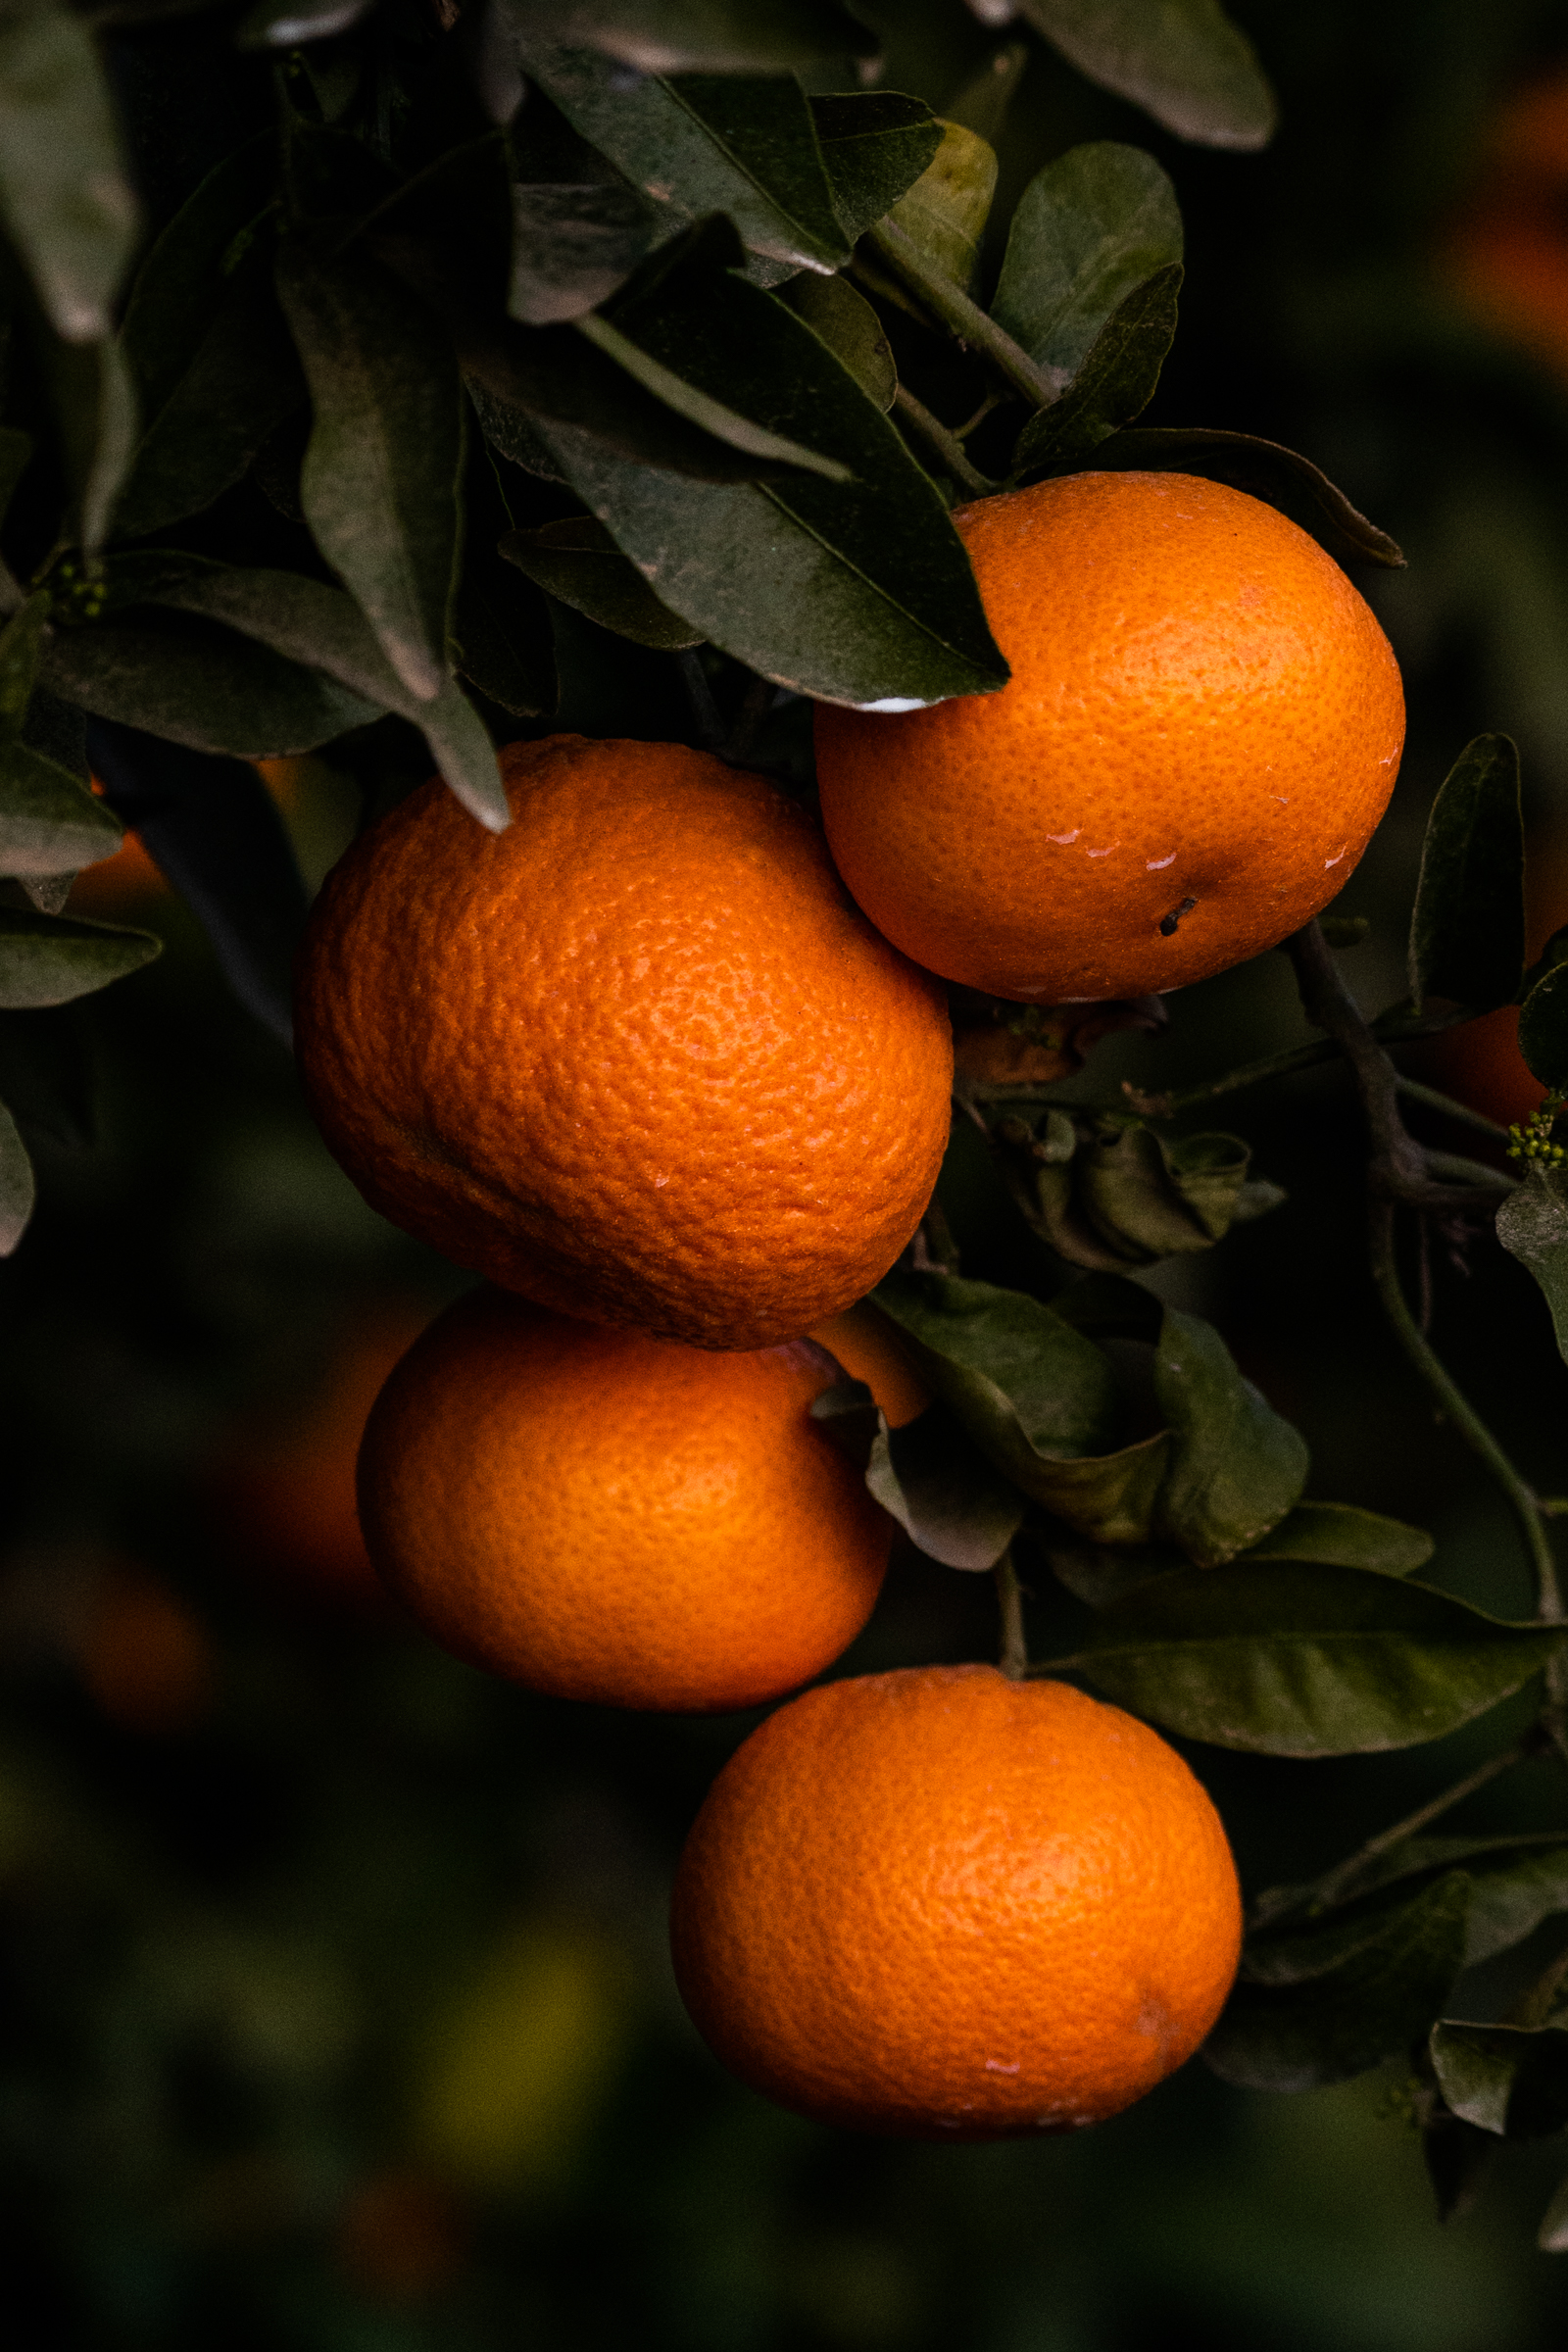 Ripe easy-peel mandarins ready for harvest near Fresno, California